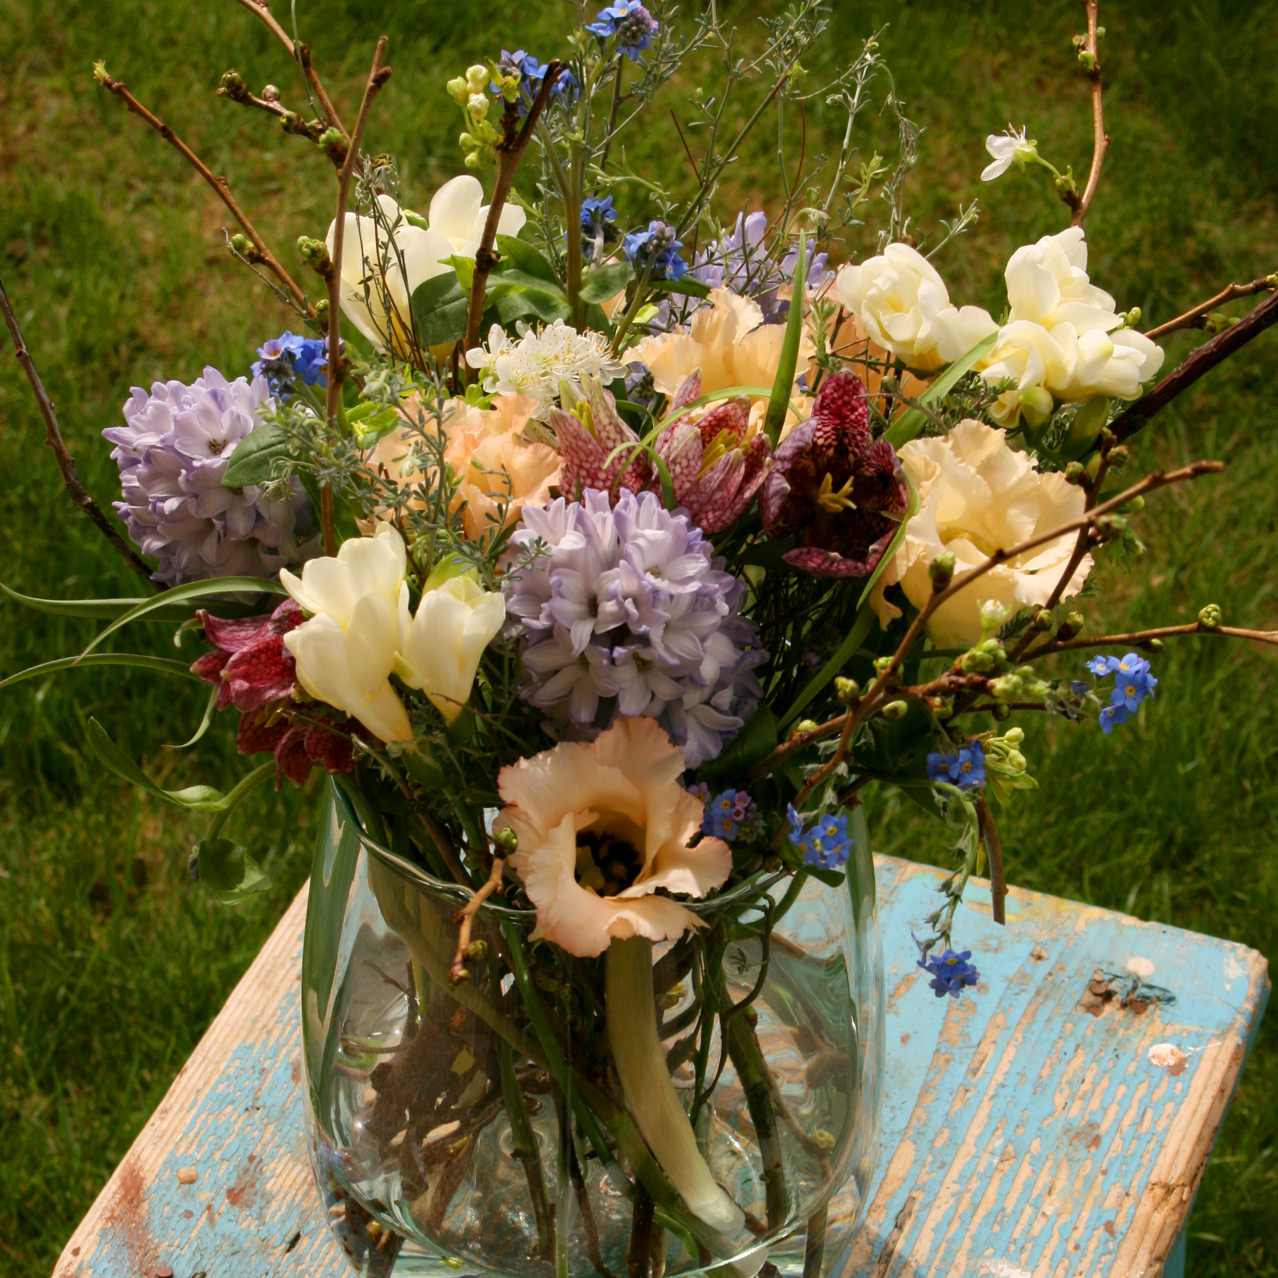 Arrangement de fleurs coupées pastel dans un vase en verre. Avec des Jacinthes, Lysianthus, Myosotis, Freesia et Fritillaires.